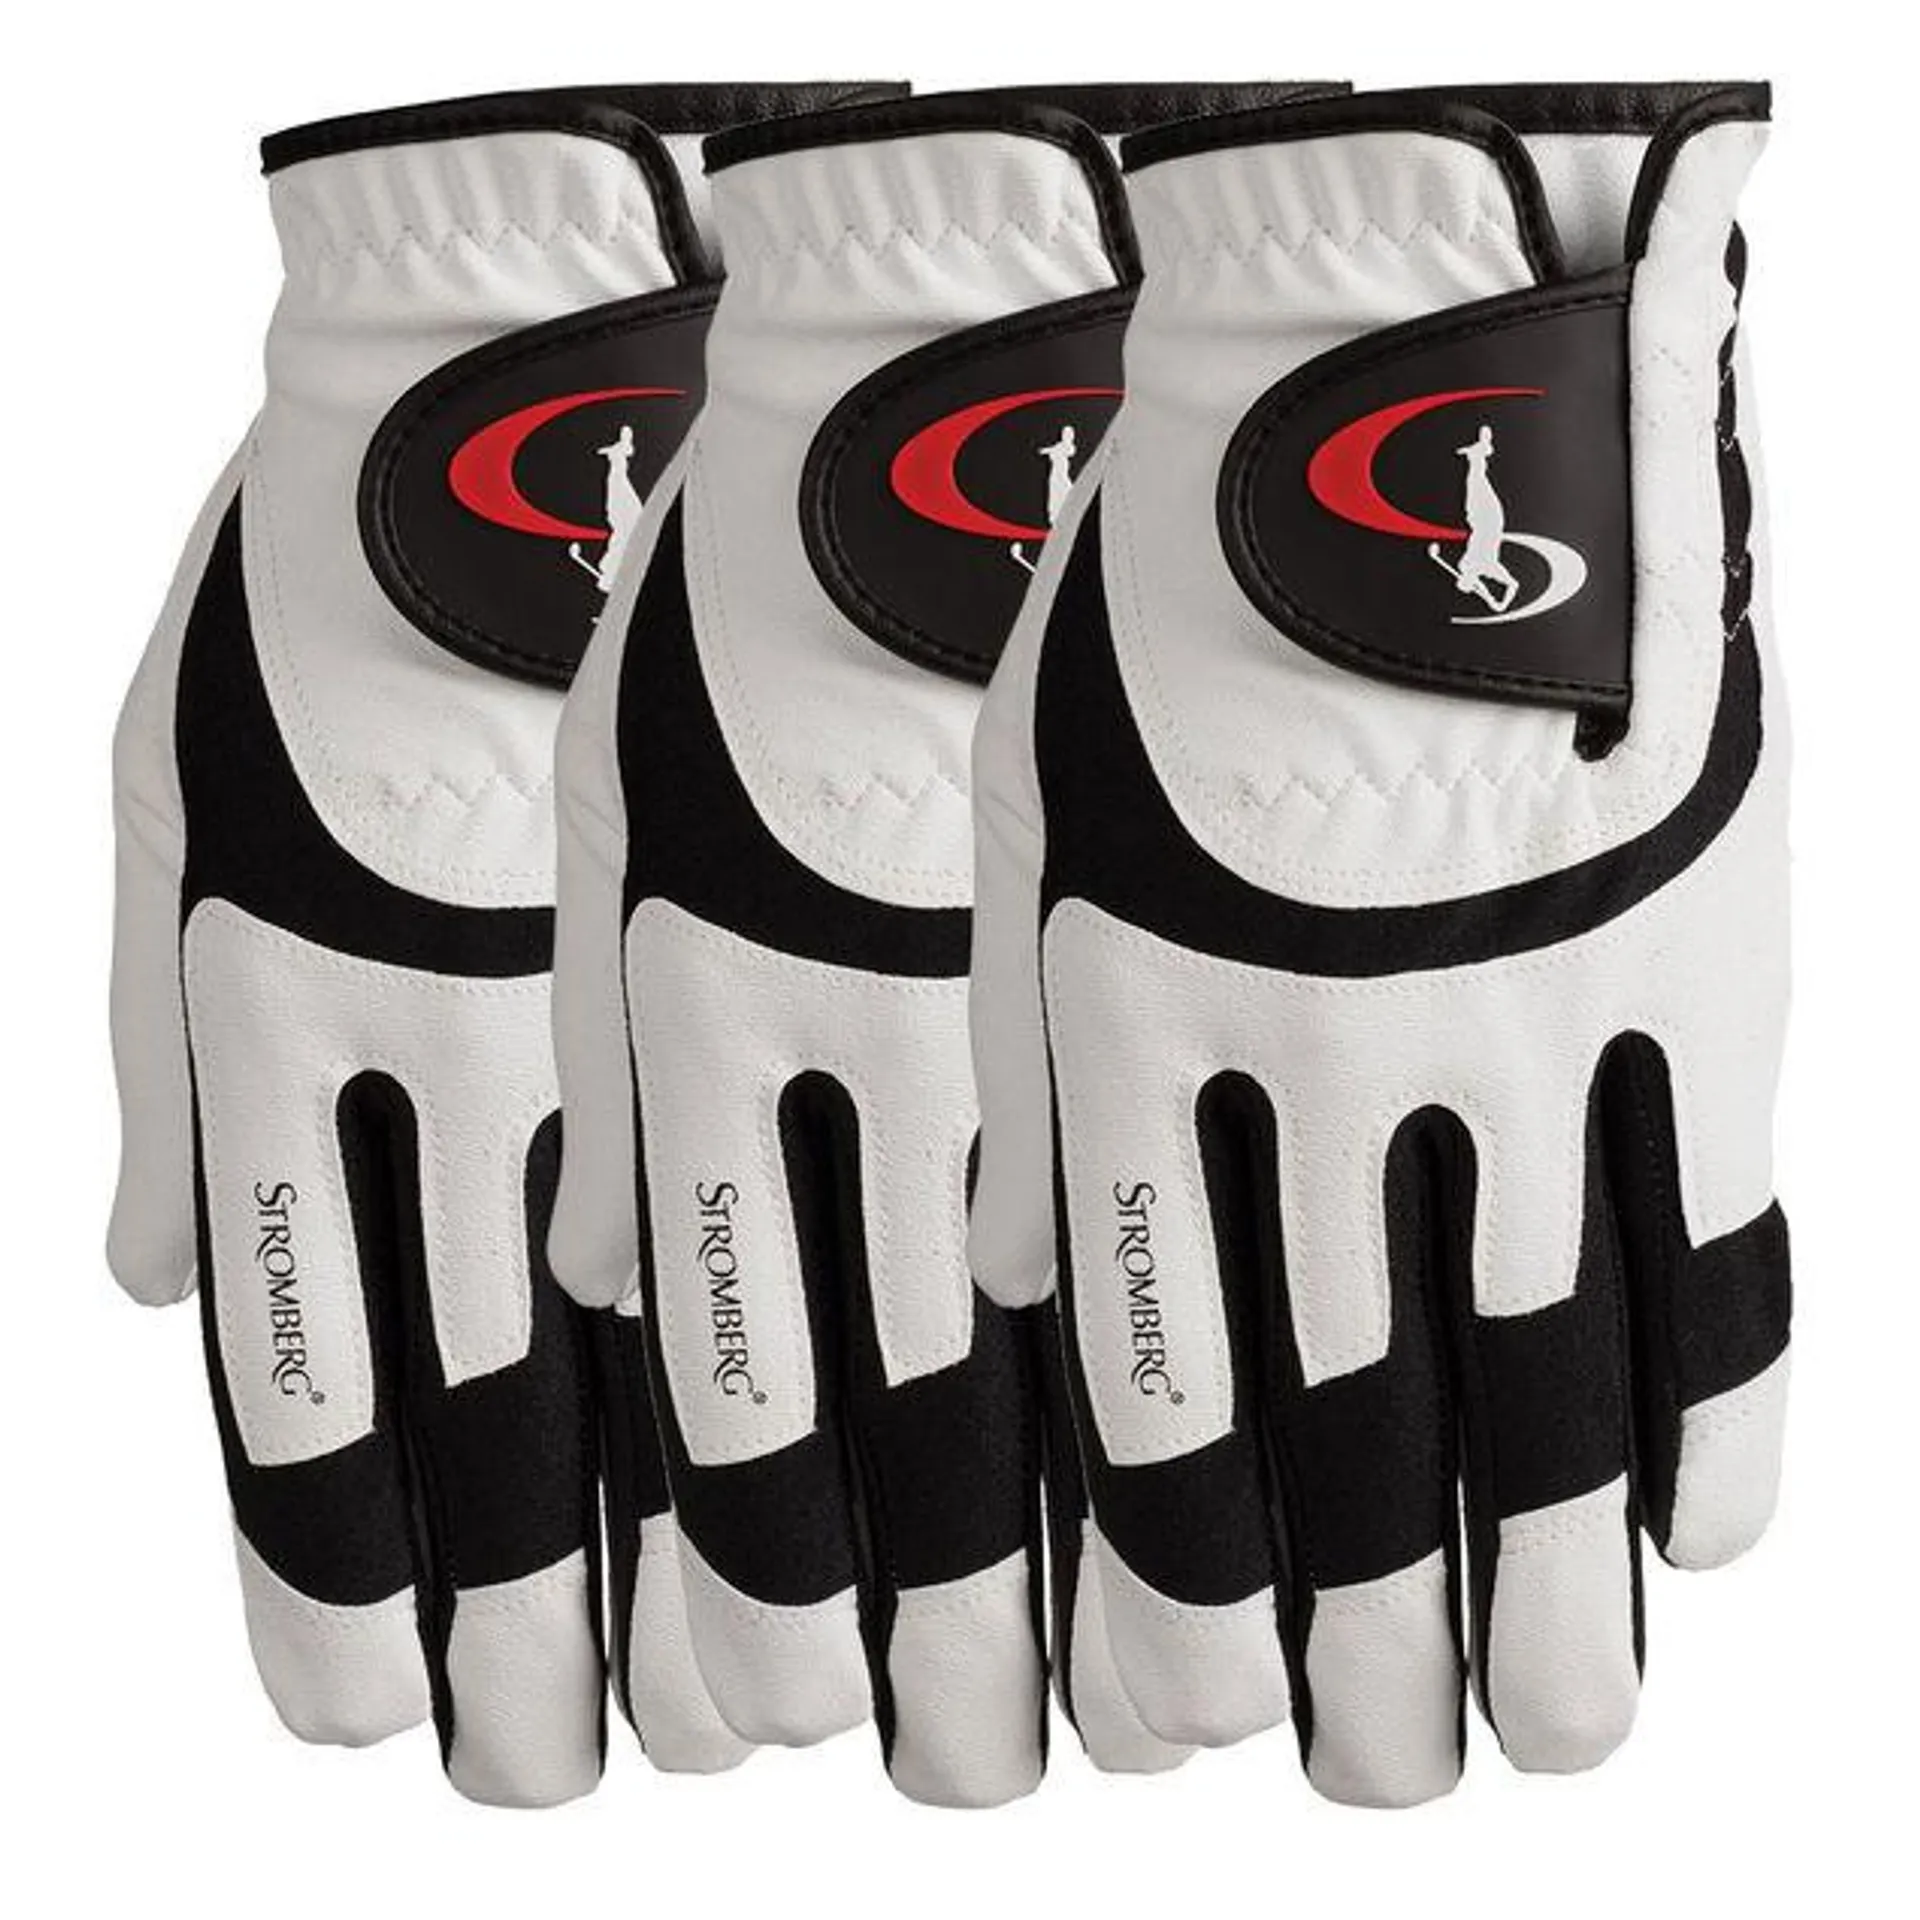 Stromberg Men's Premium All-Weather Golf Gloves - 3 Pack